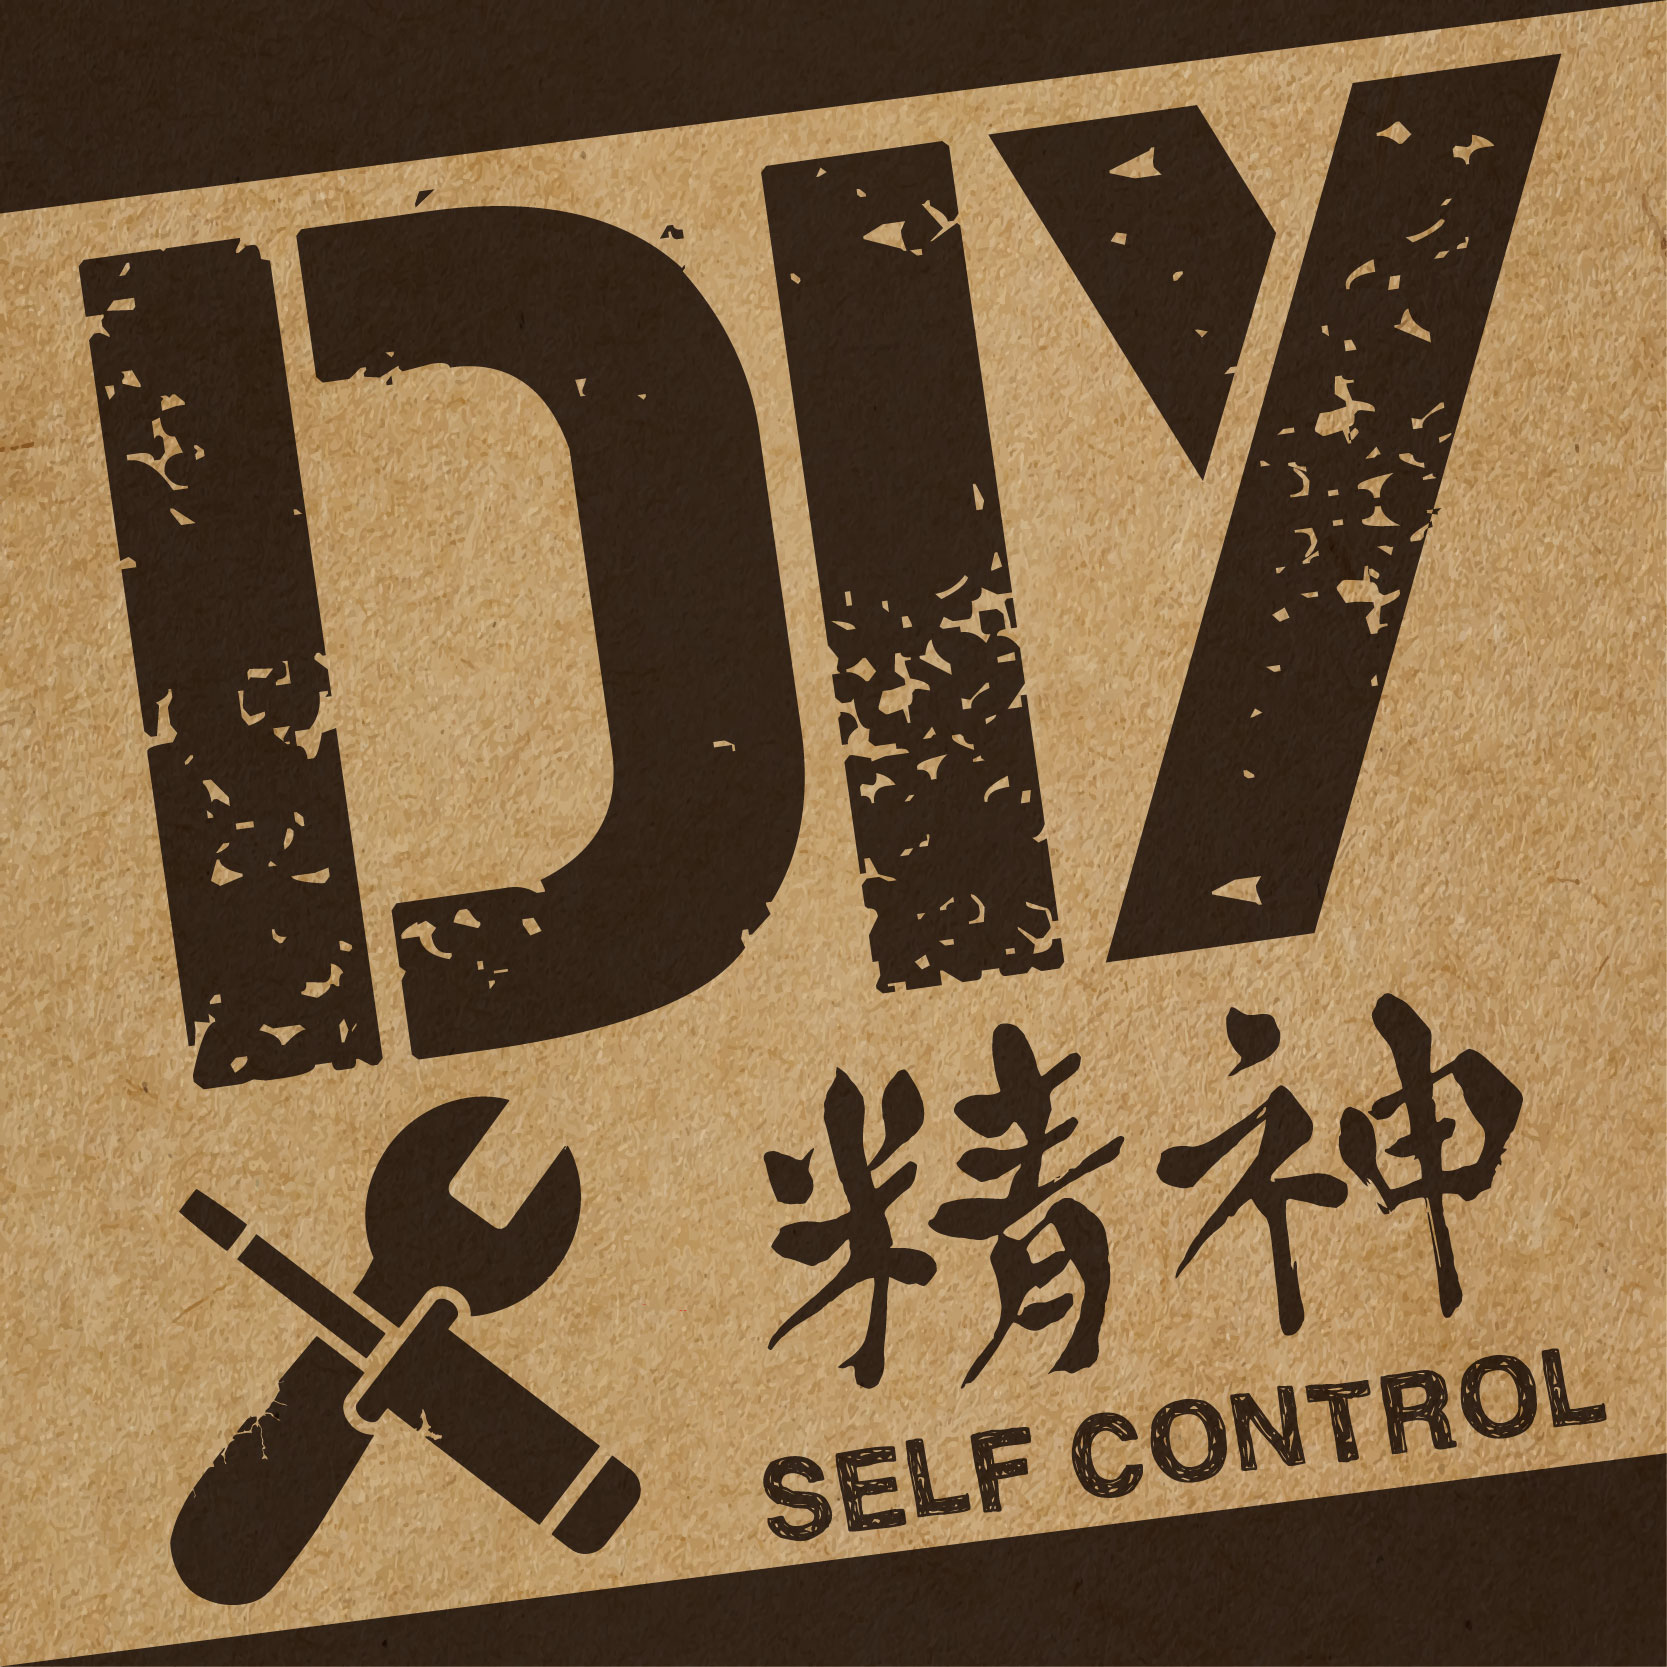 第１回 DIY精神〜Self Control〜